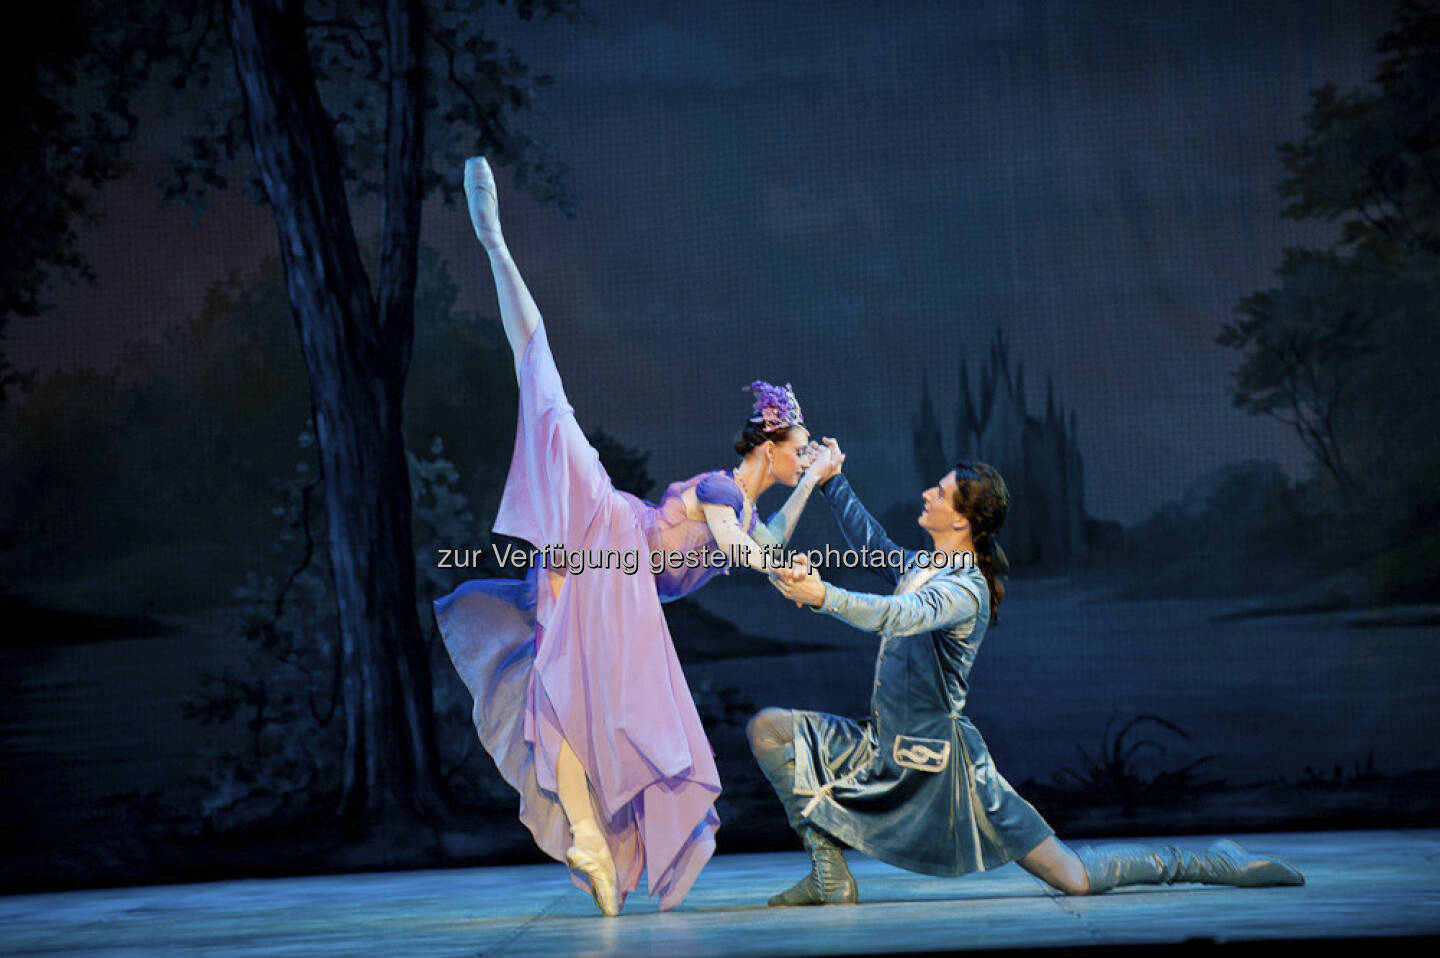 Am 22. November 2013 kommt der märchenhafte Ballettklassiker Dornröschen vom St. Petersburg Festival Ballet Ensemble in die WIener Stadthalle